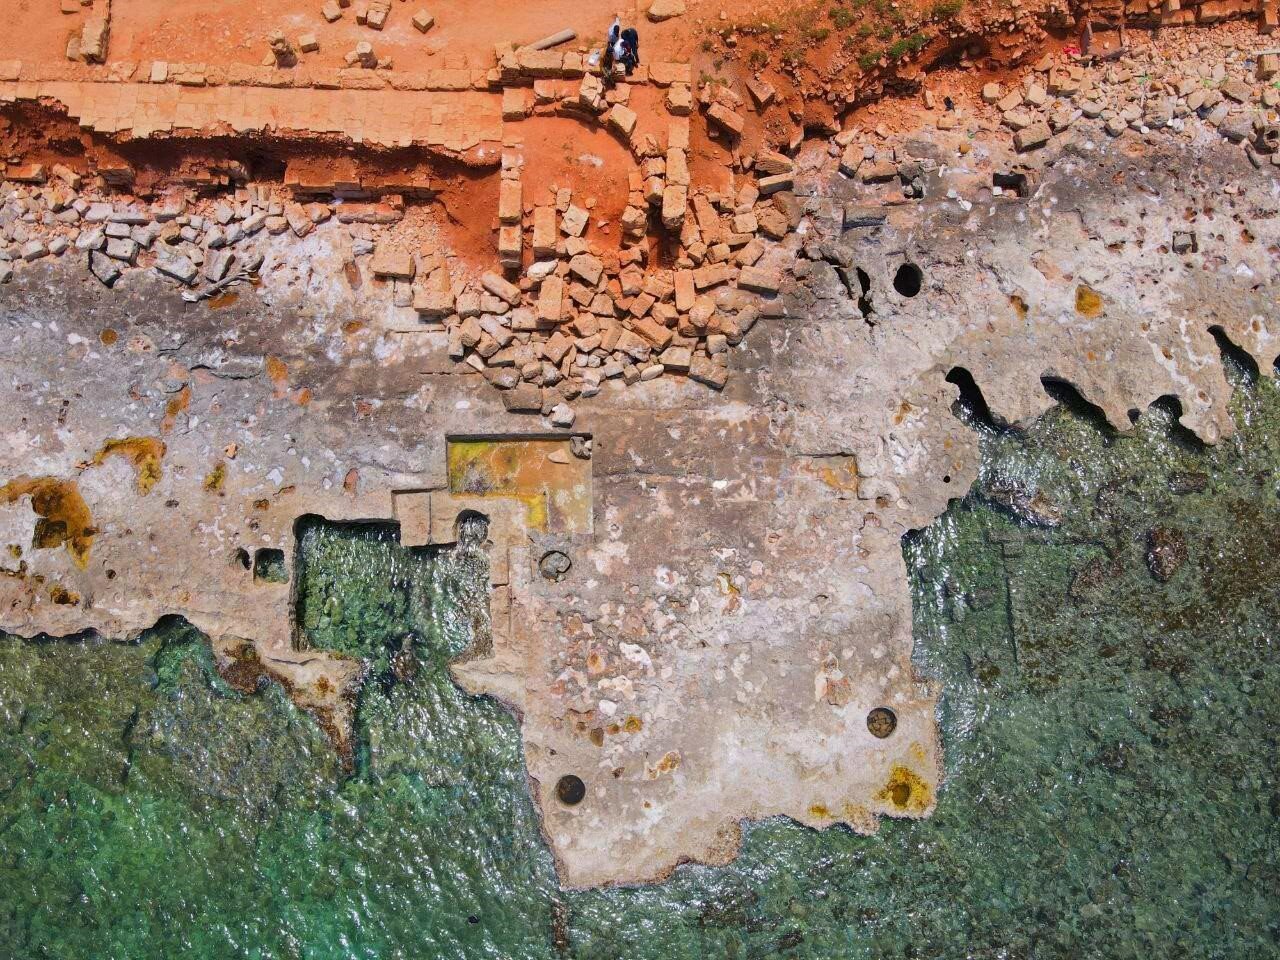 Imagen reciente de un dron (2022) que muestra daños en estructuras arqueológicas en el antiguo puerto de Apolonia (Cirenaica, este de Libia) causados ​​por la erosión costera.